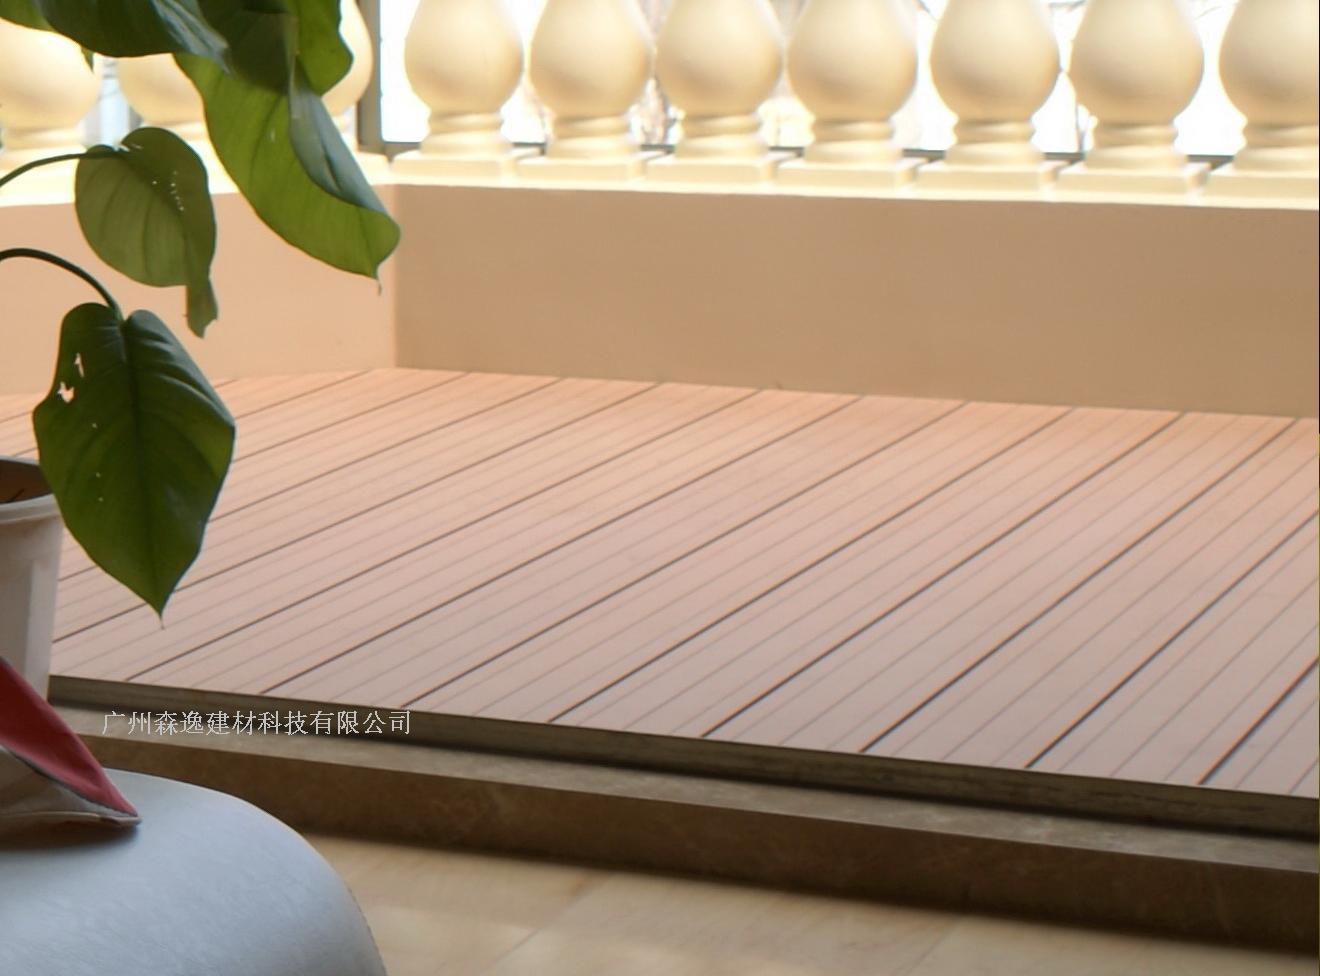 塑木材料应用-阳台地板